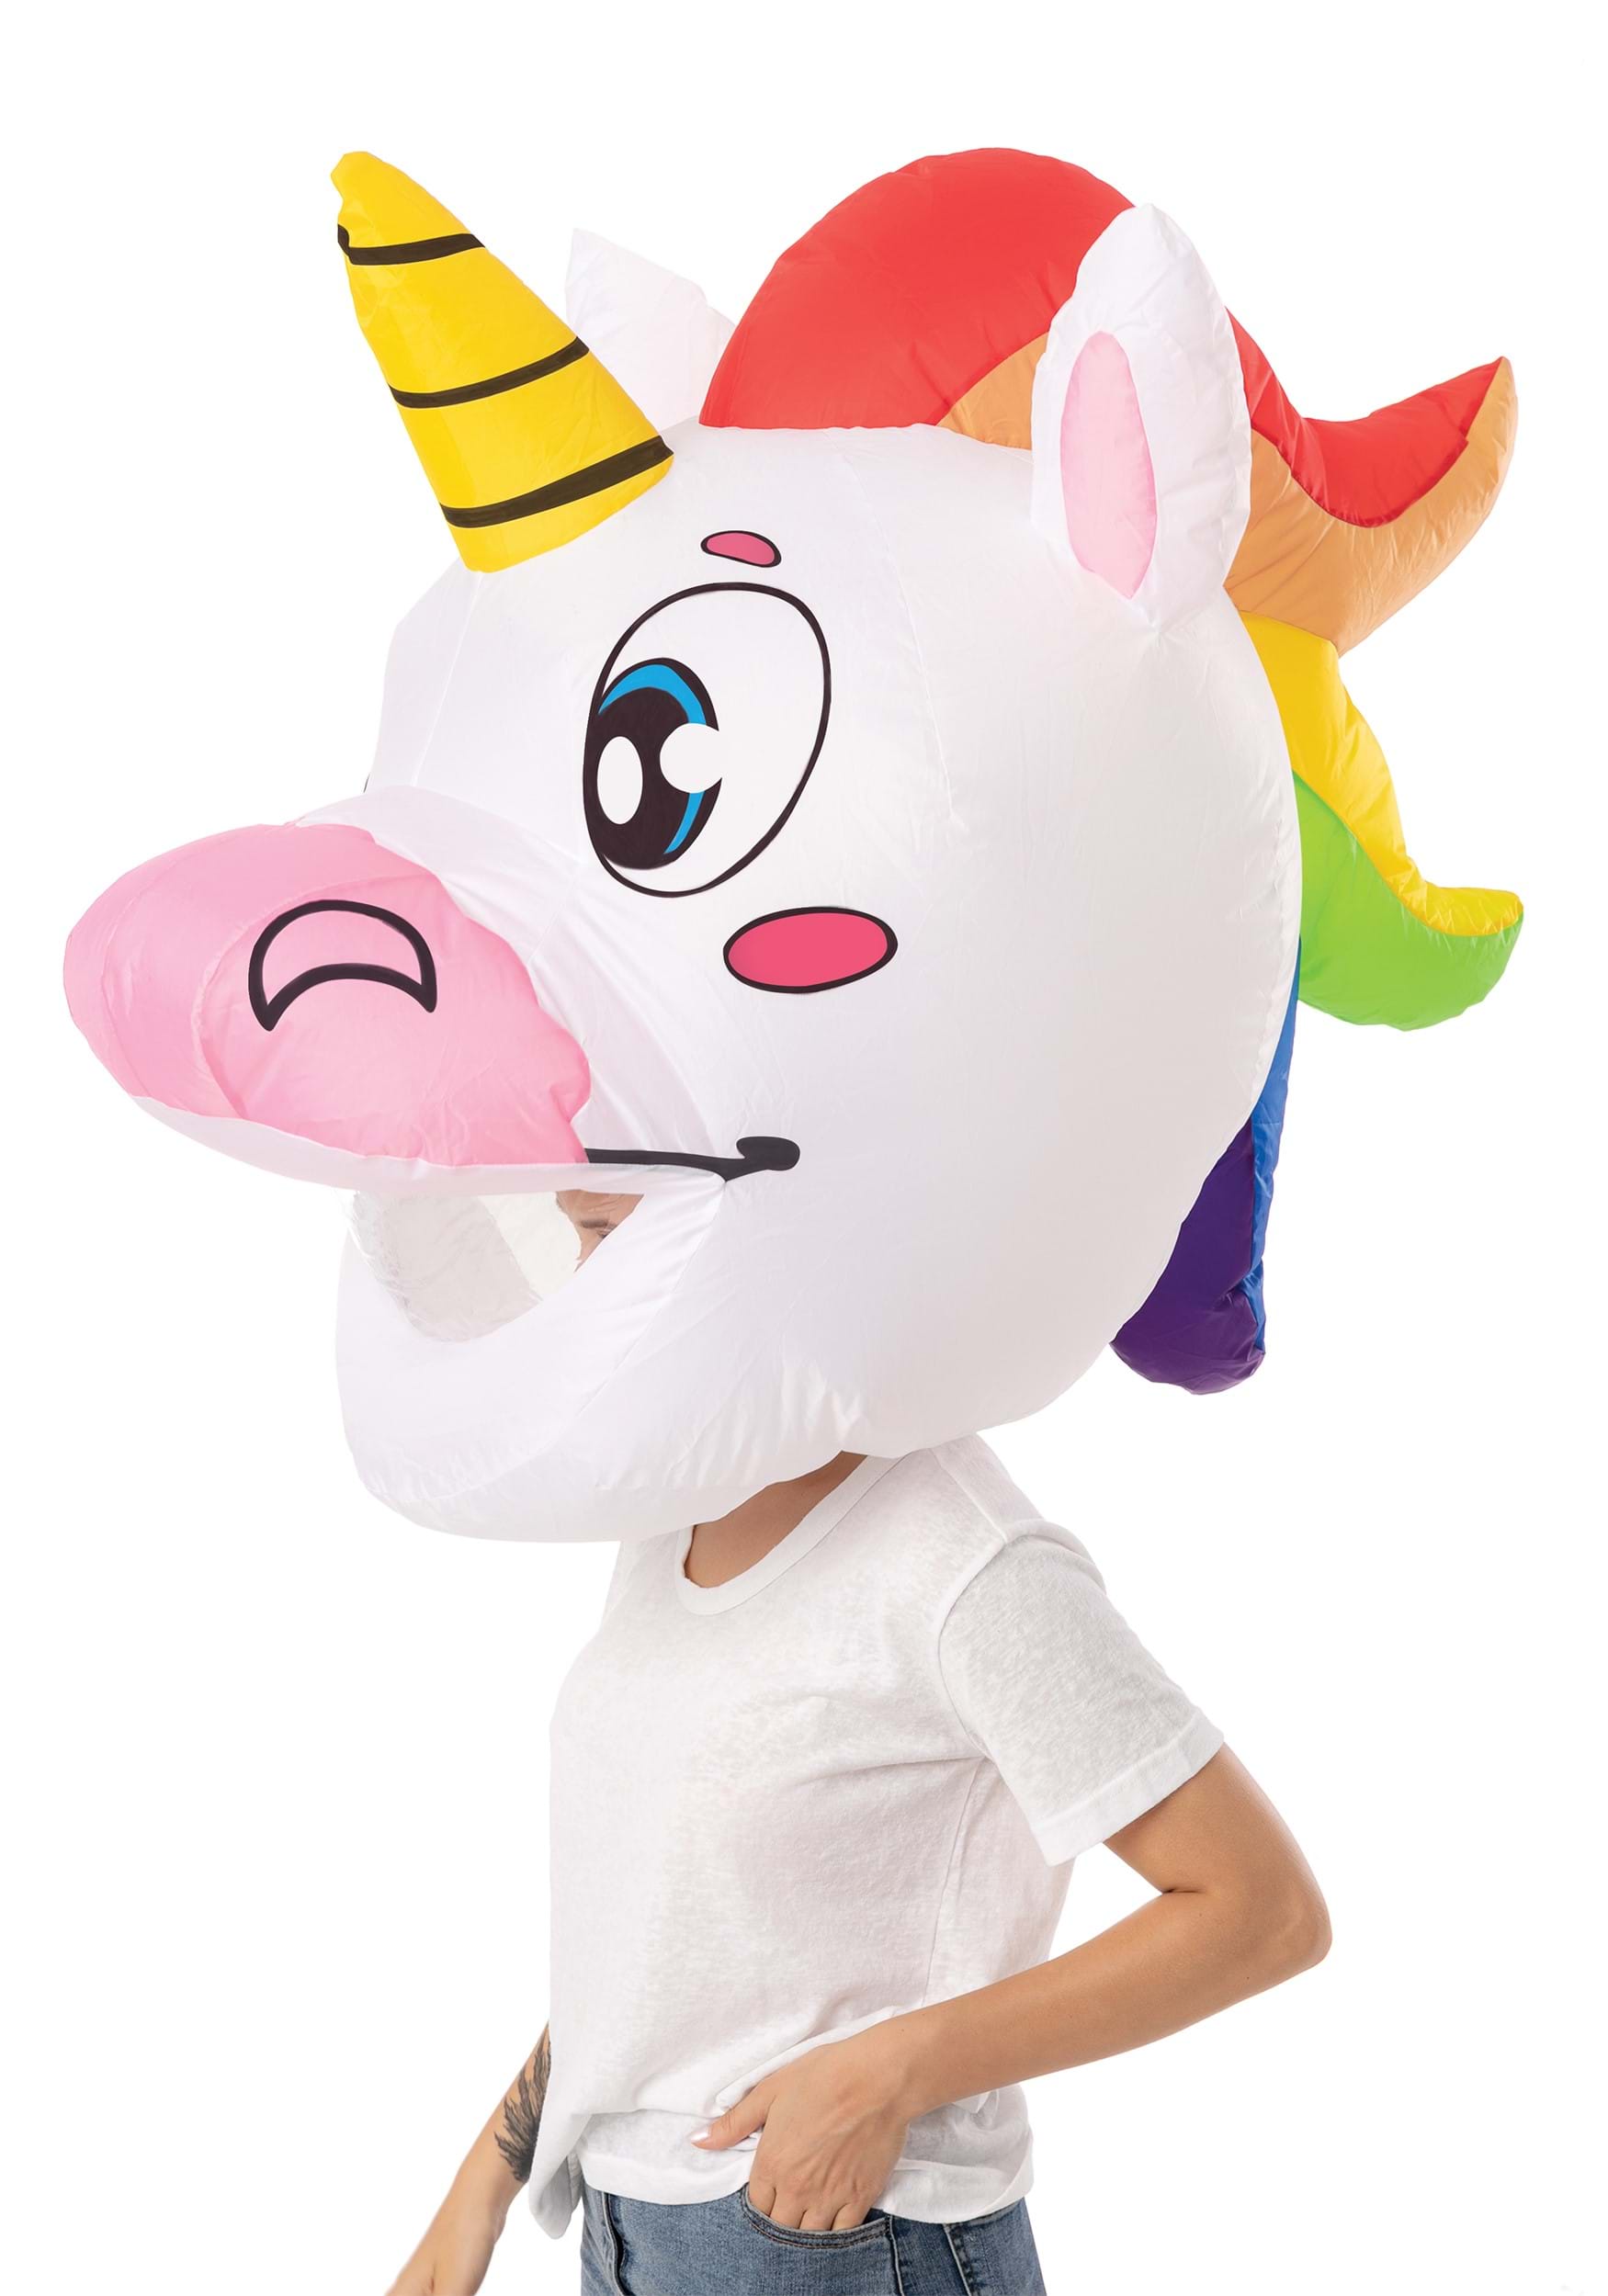 Inflatable Adult Unicorn Bobblehead